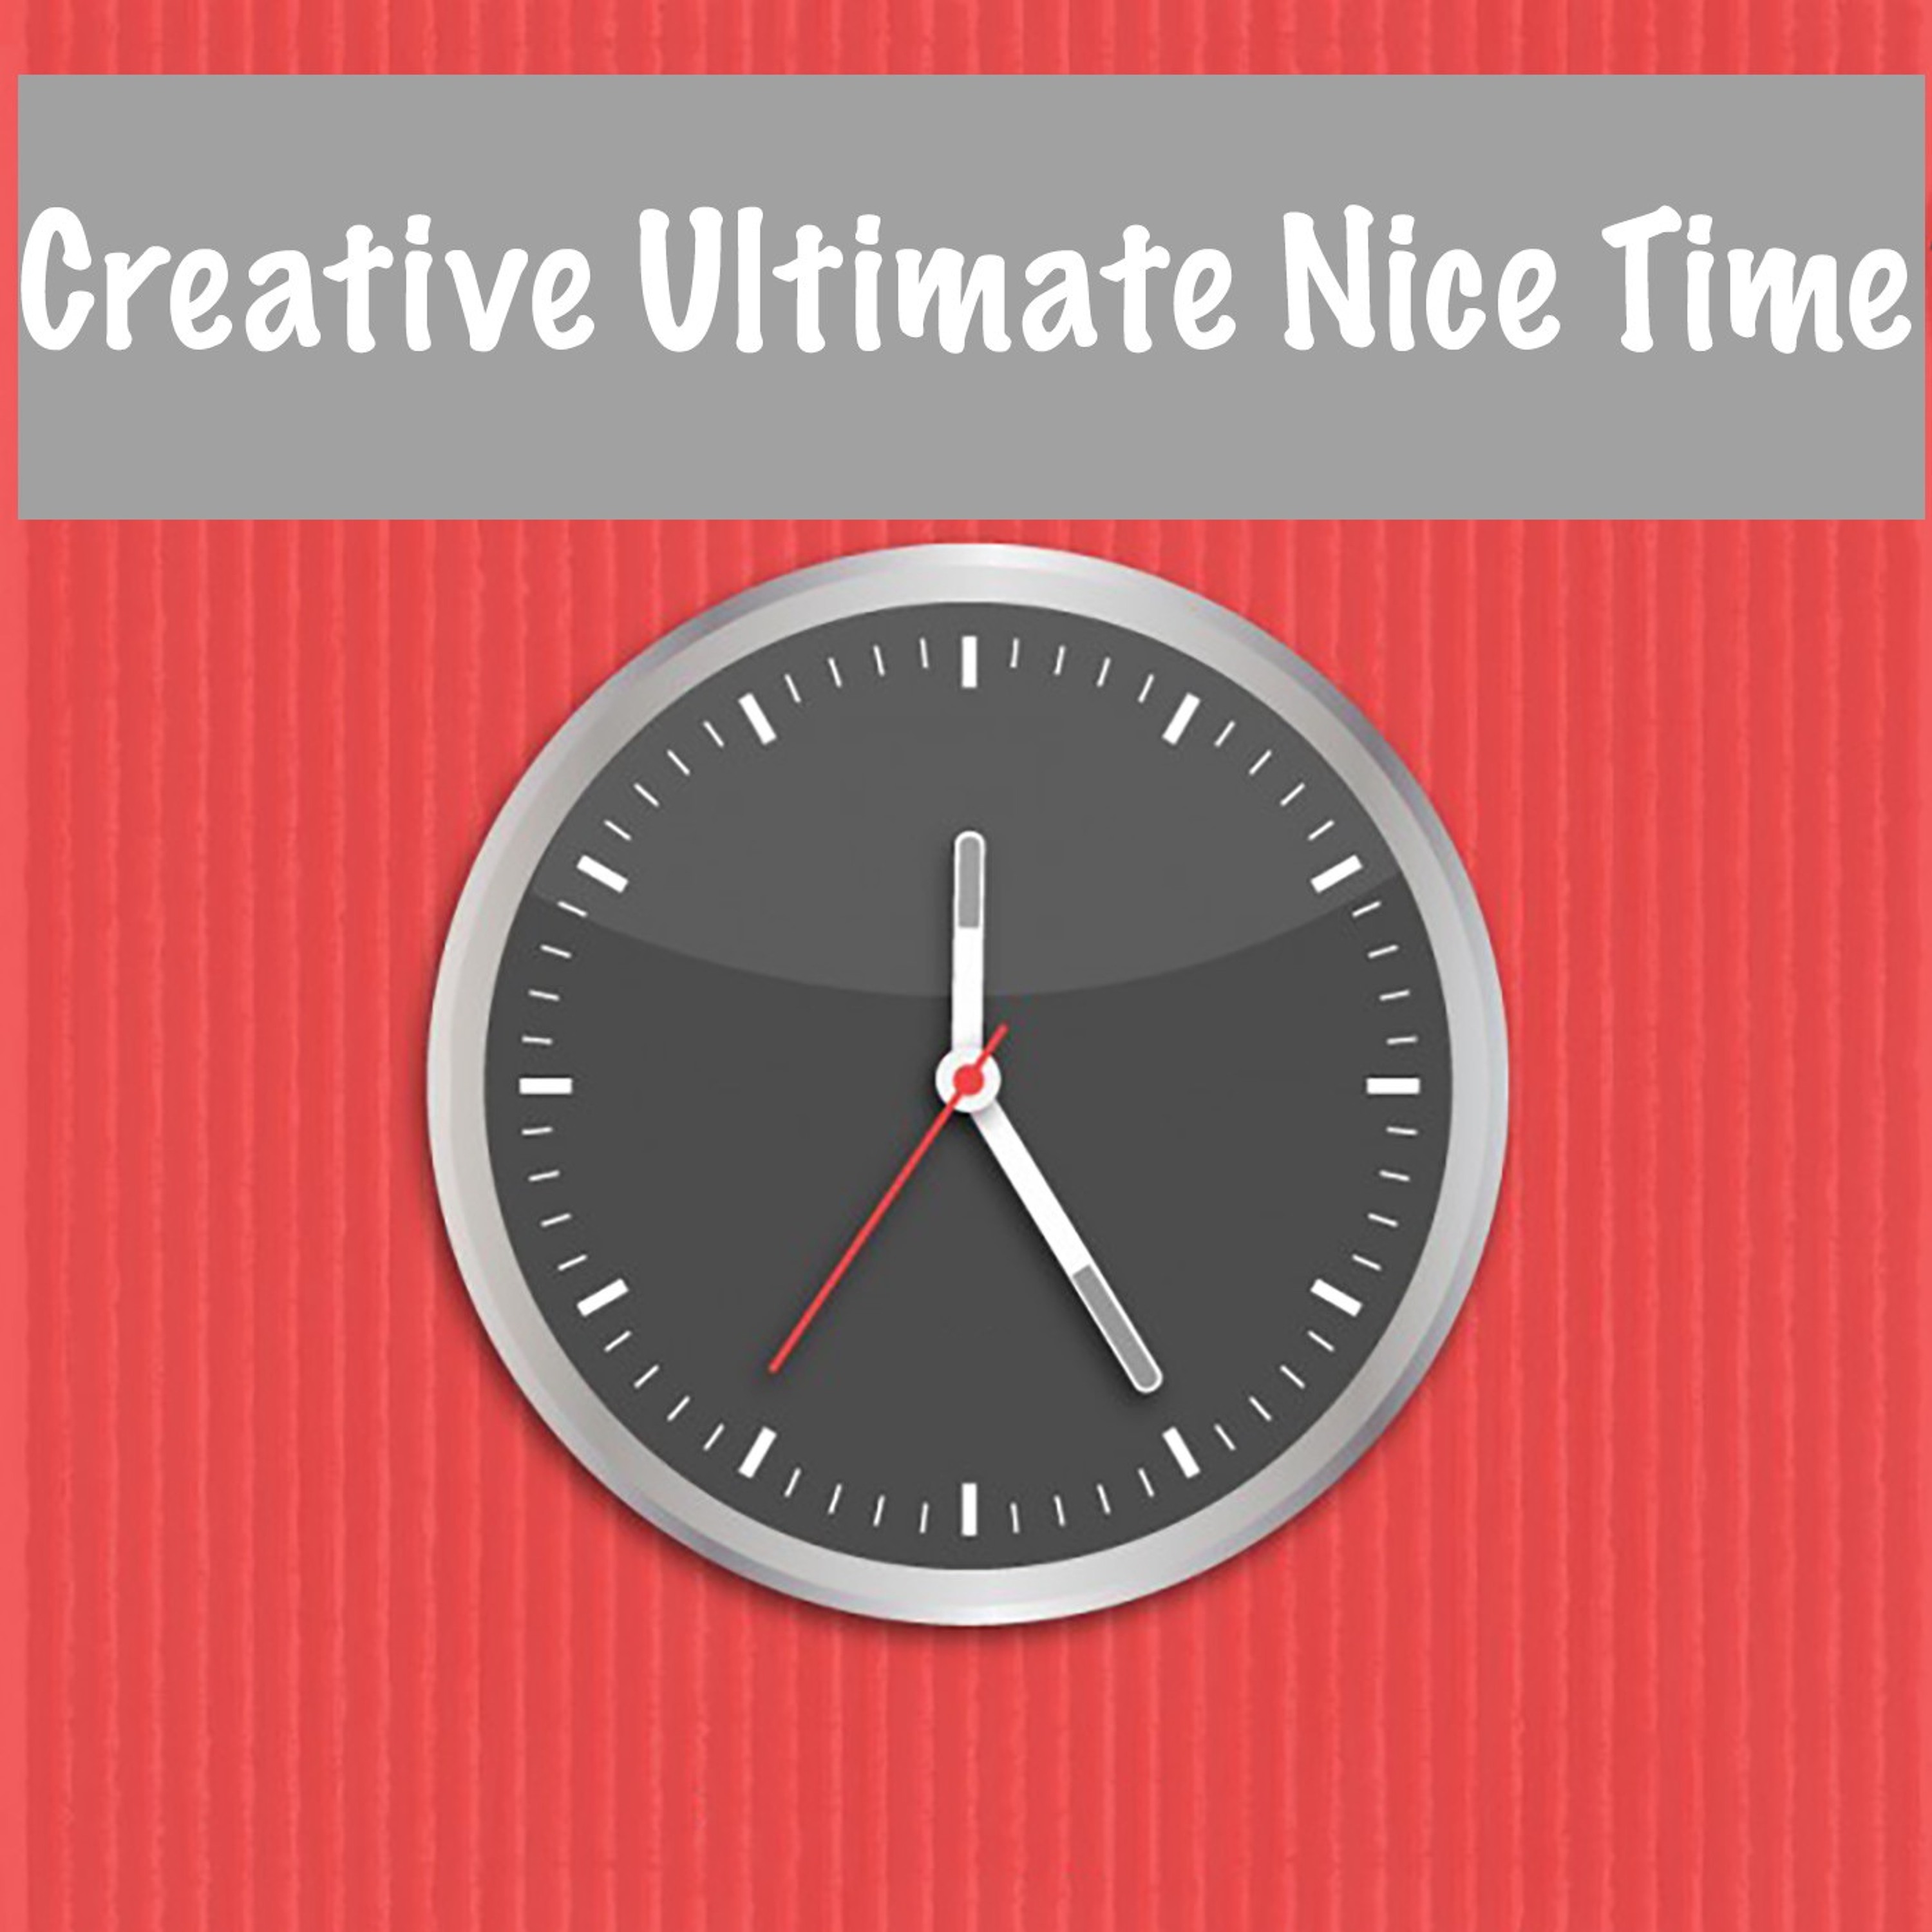 Creative time. Time Creative. Nice time. Nice time слово. Креативное время.